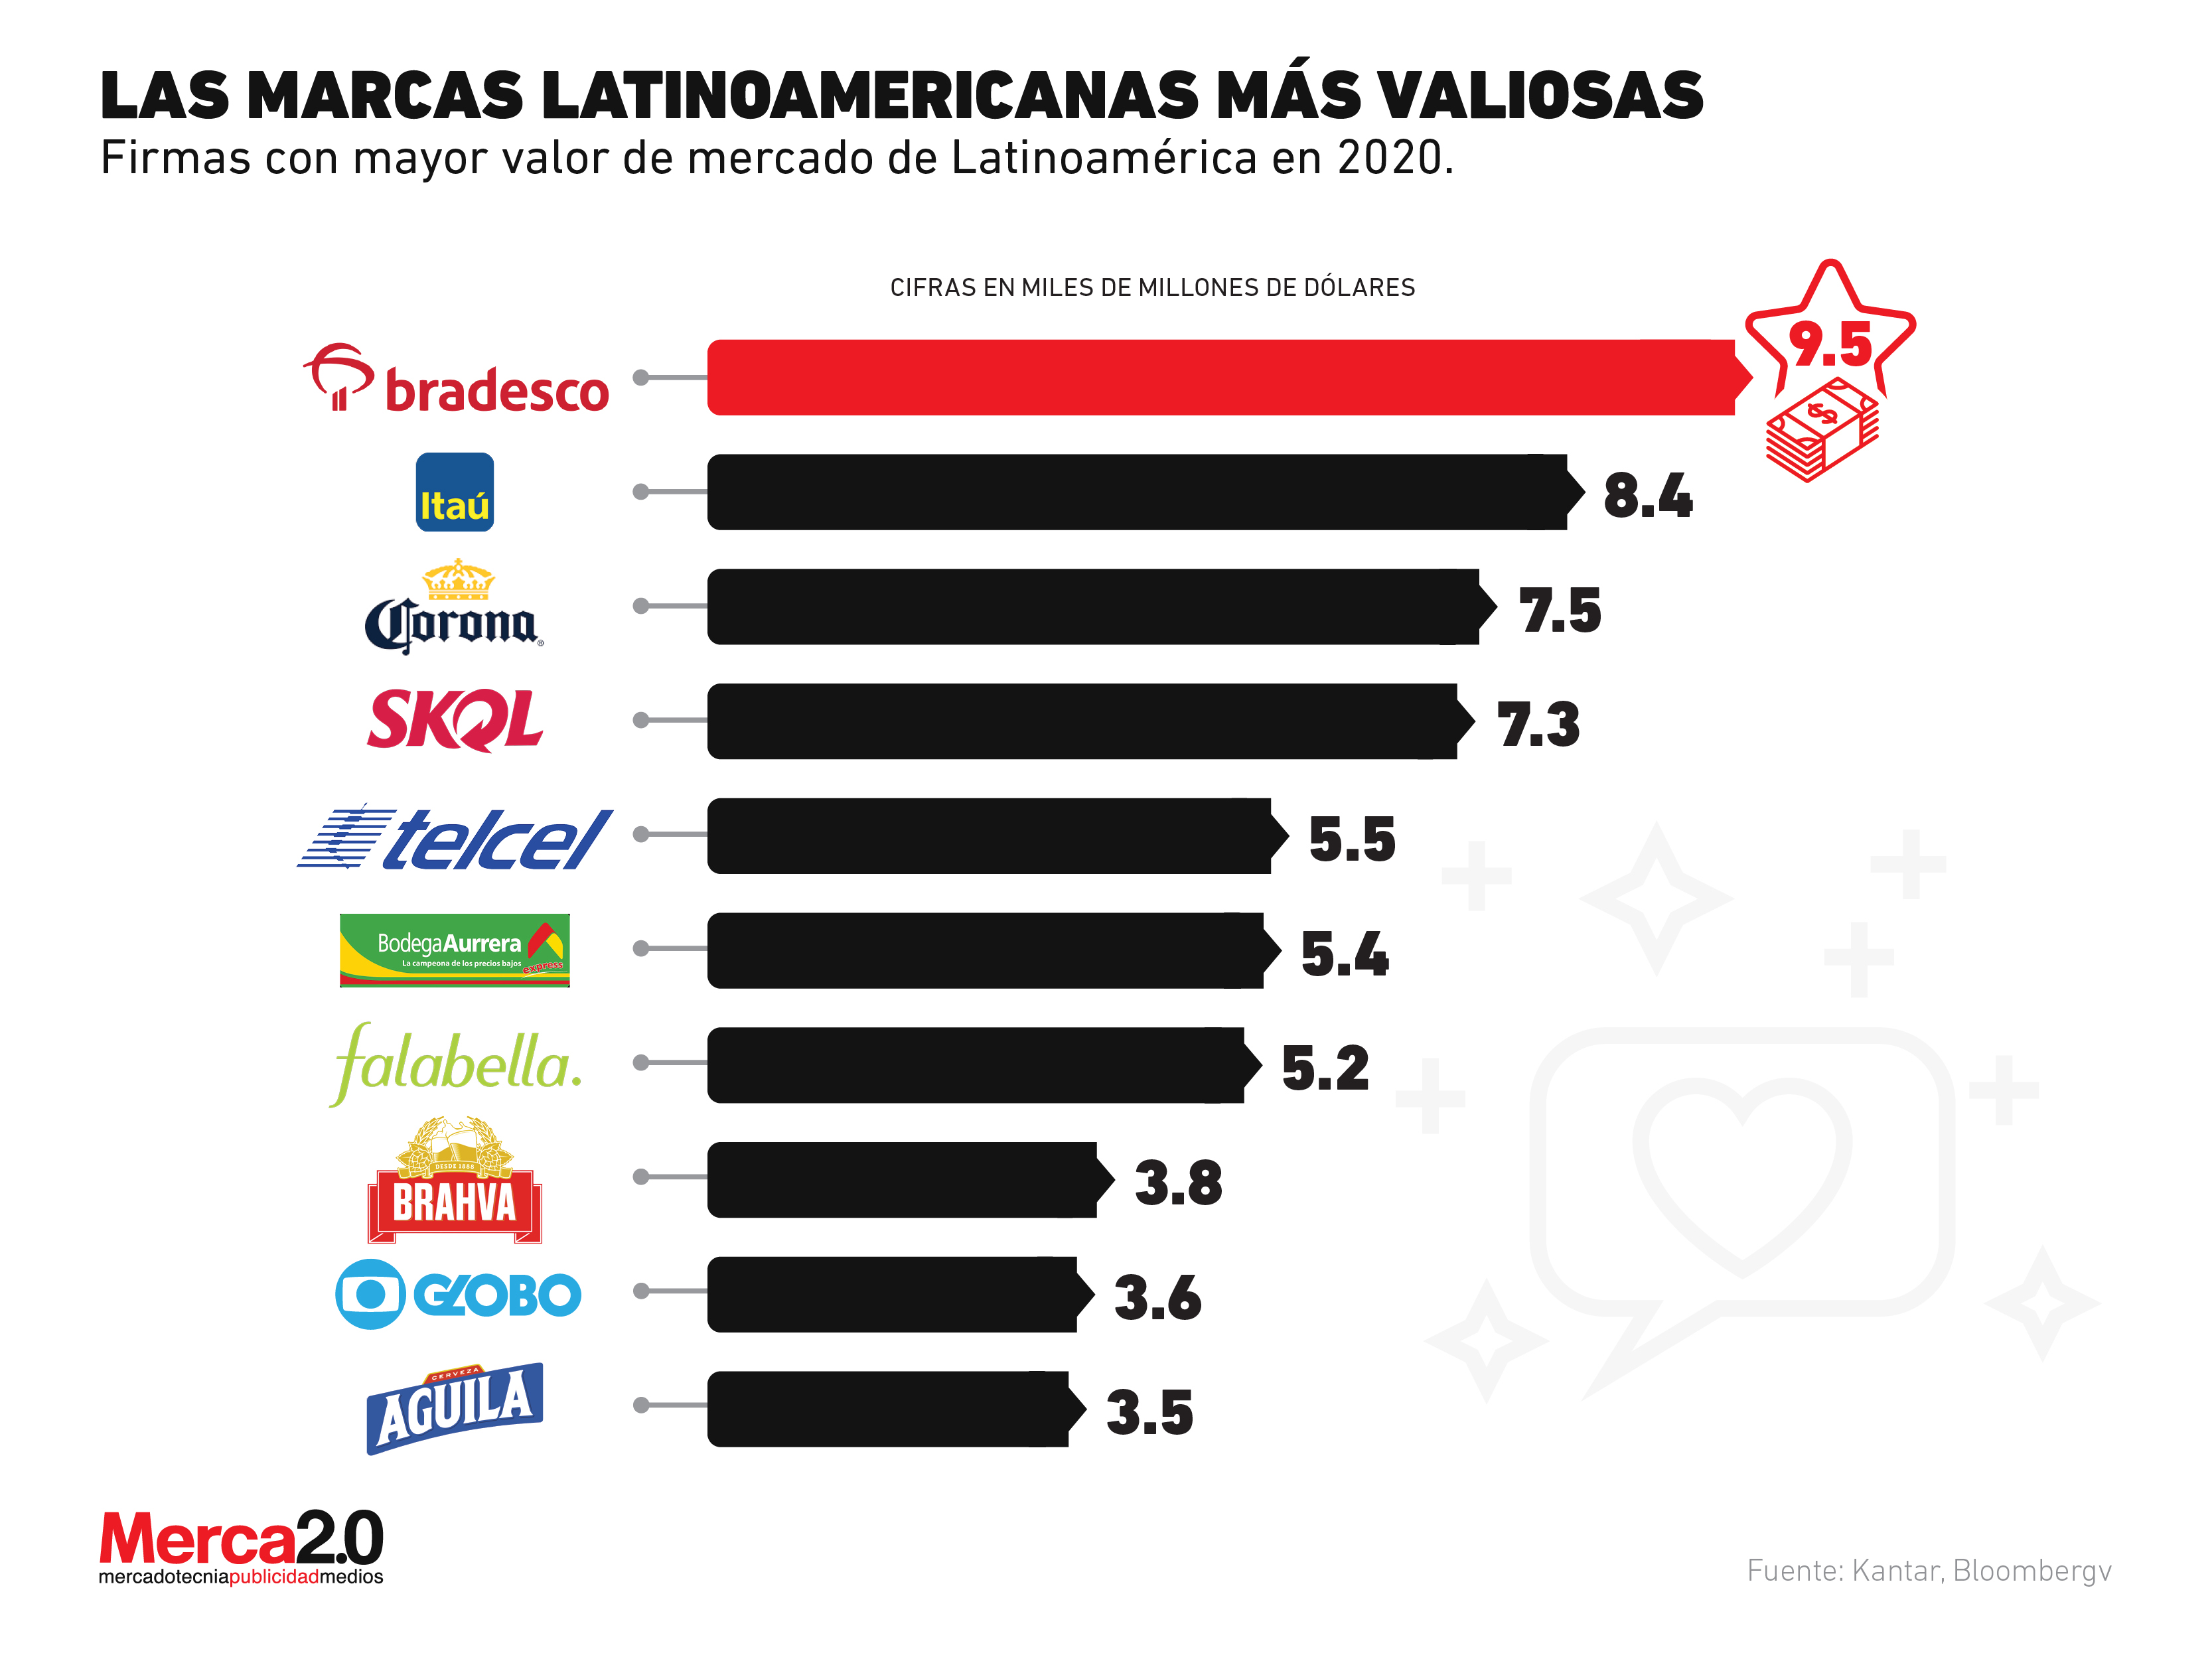 Las marcas latinoamericanas más valiosas en 2020